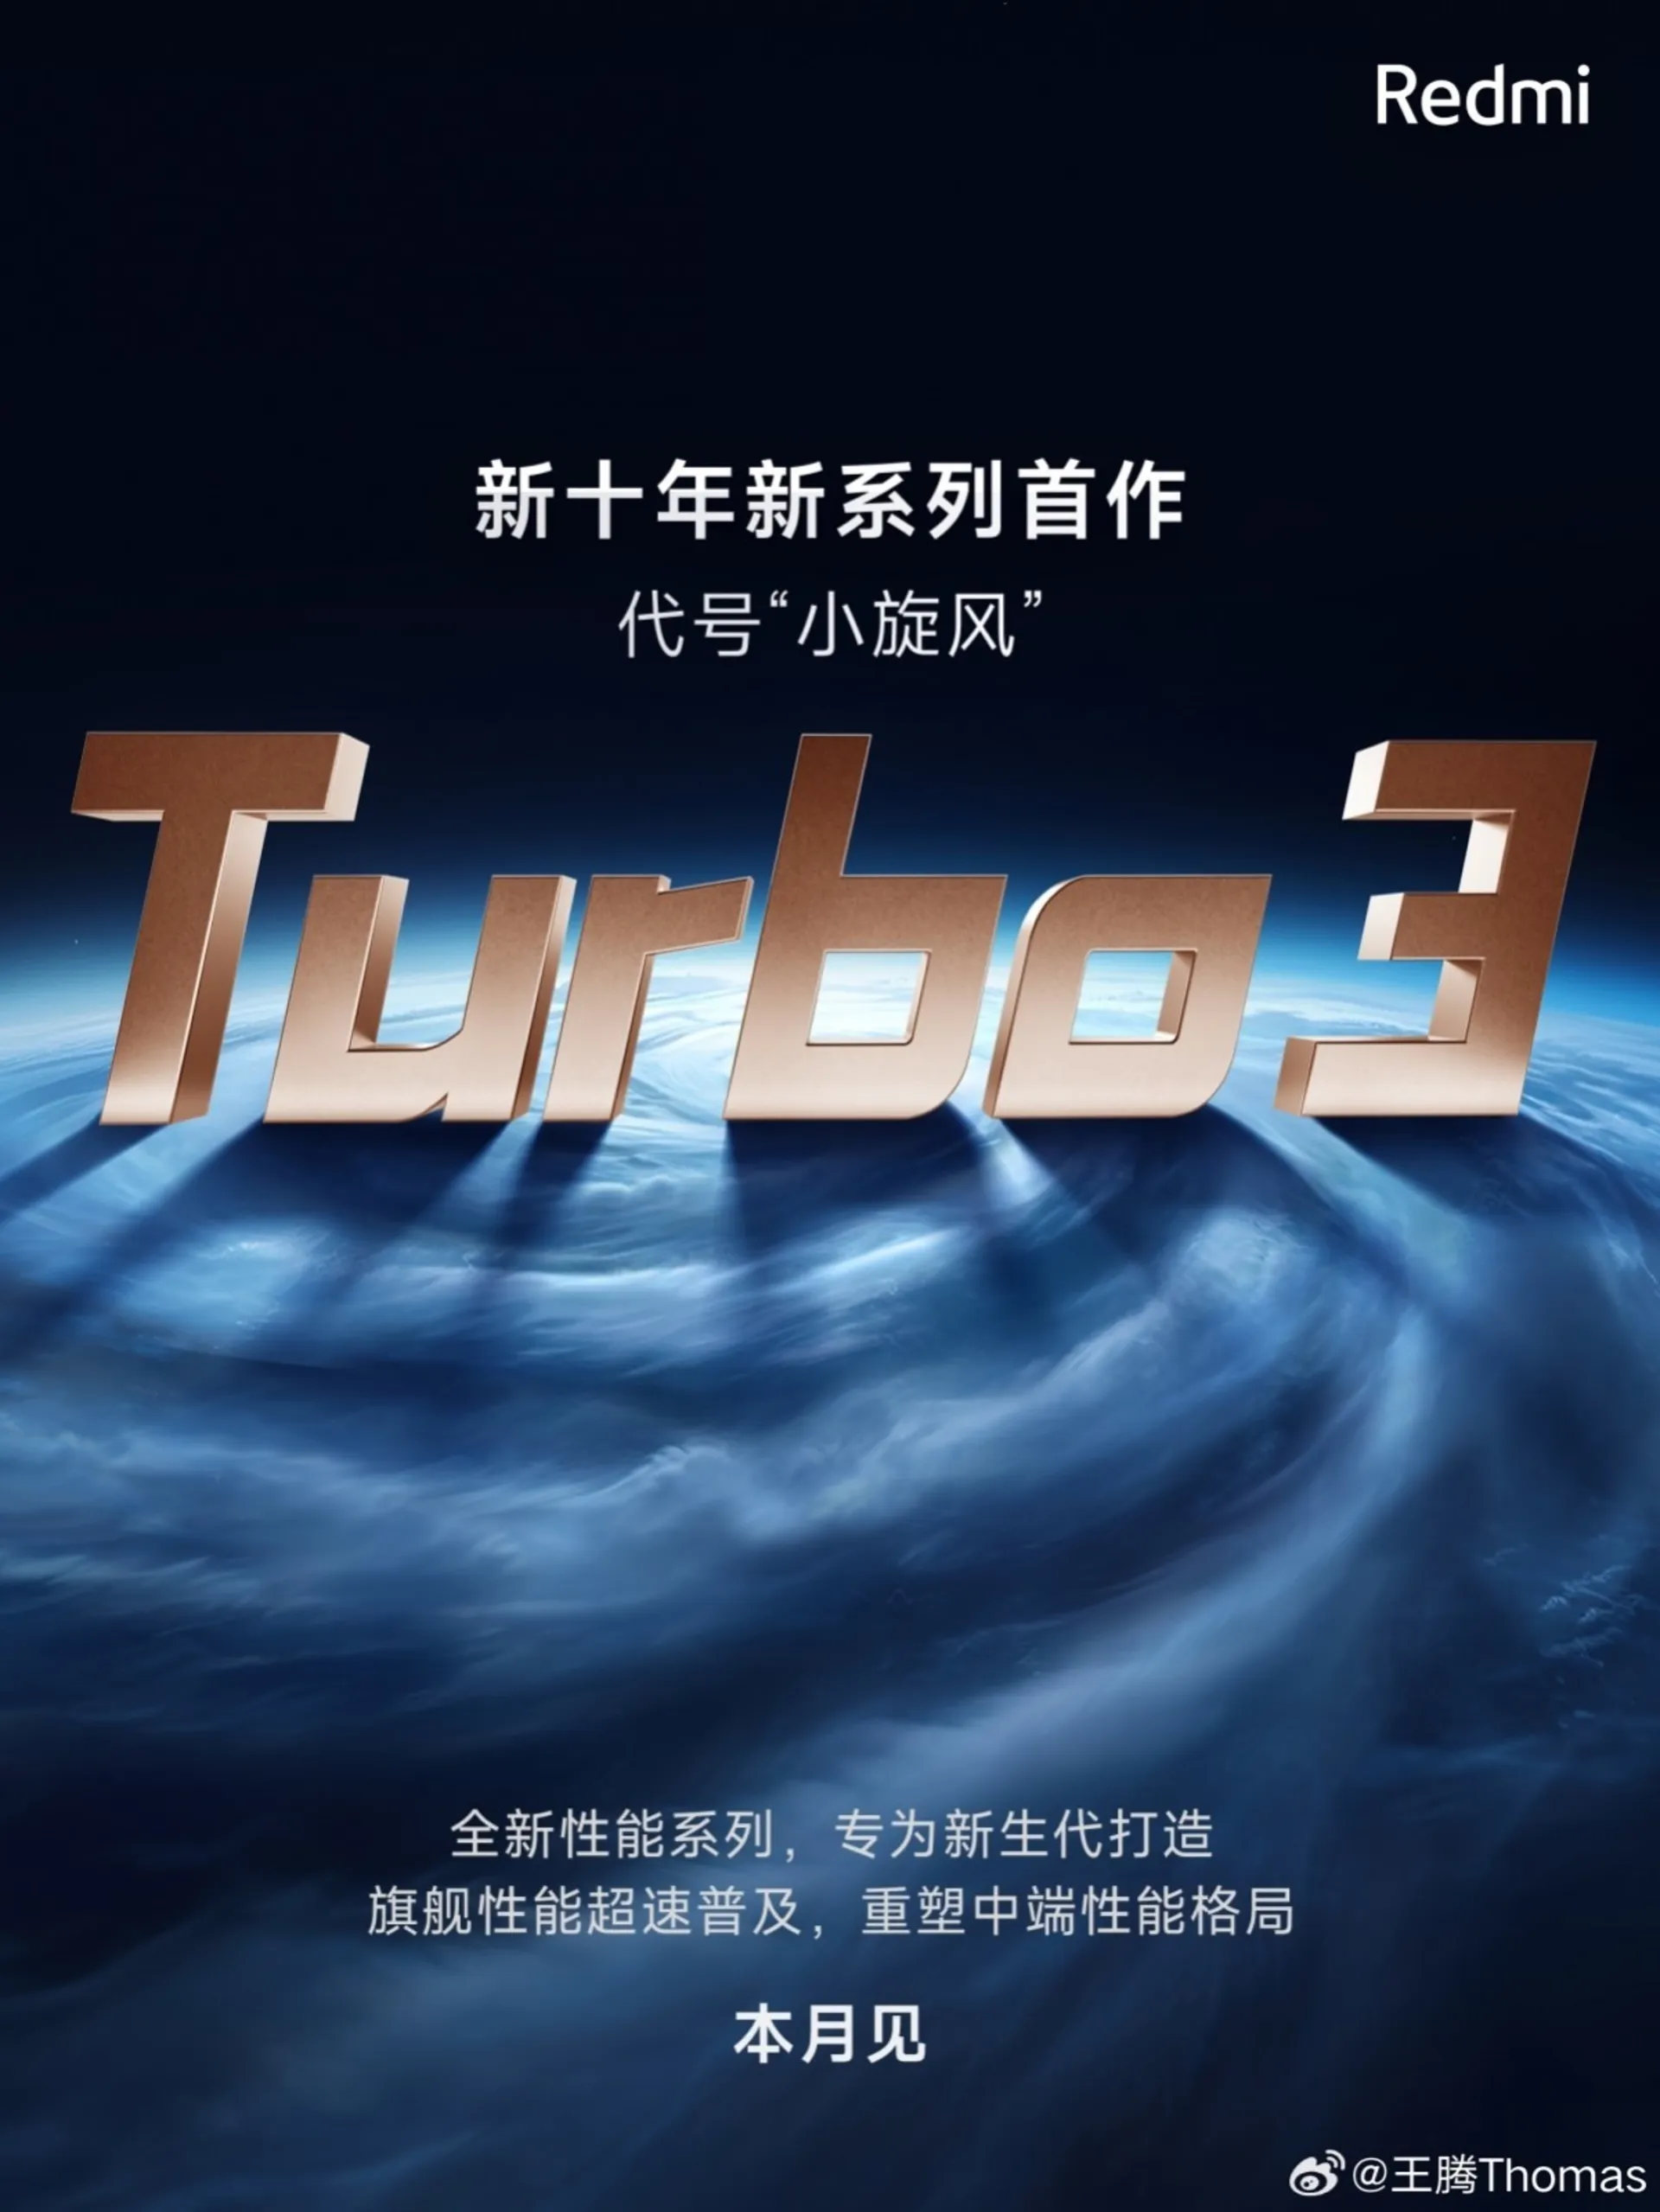 لوگوی Turbo 3 در پس‌زمینه‌ی مشکی و زمین آبی در کنار عبارت‌های چینی